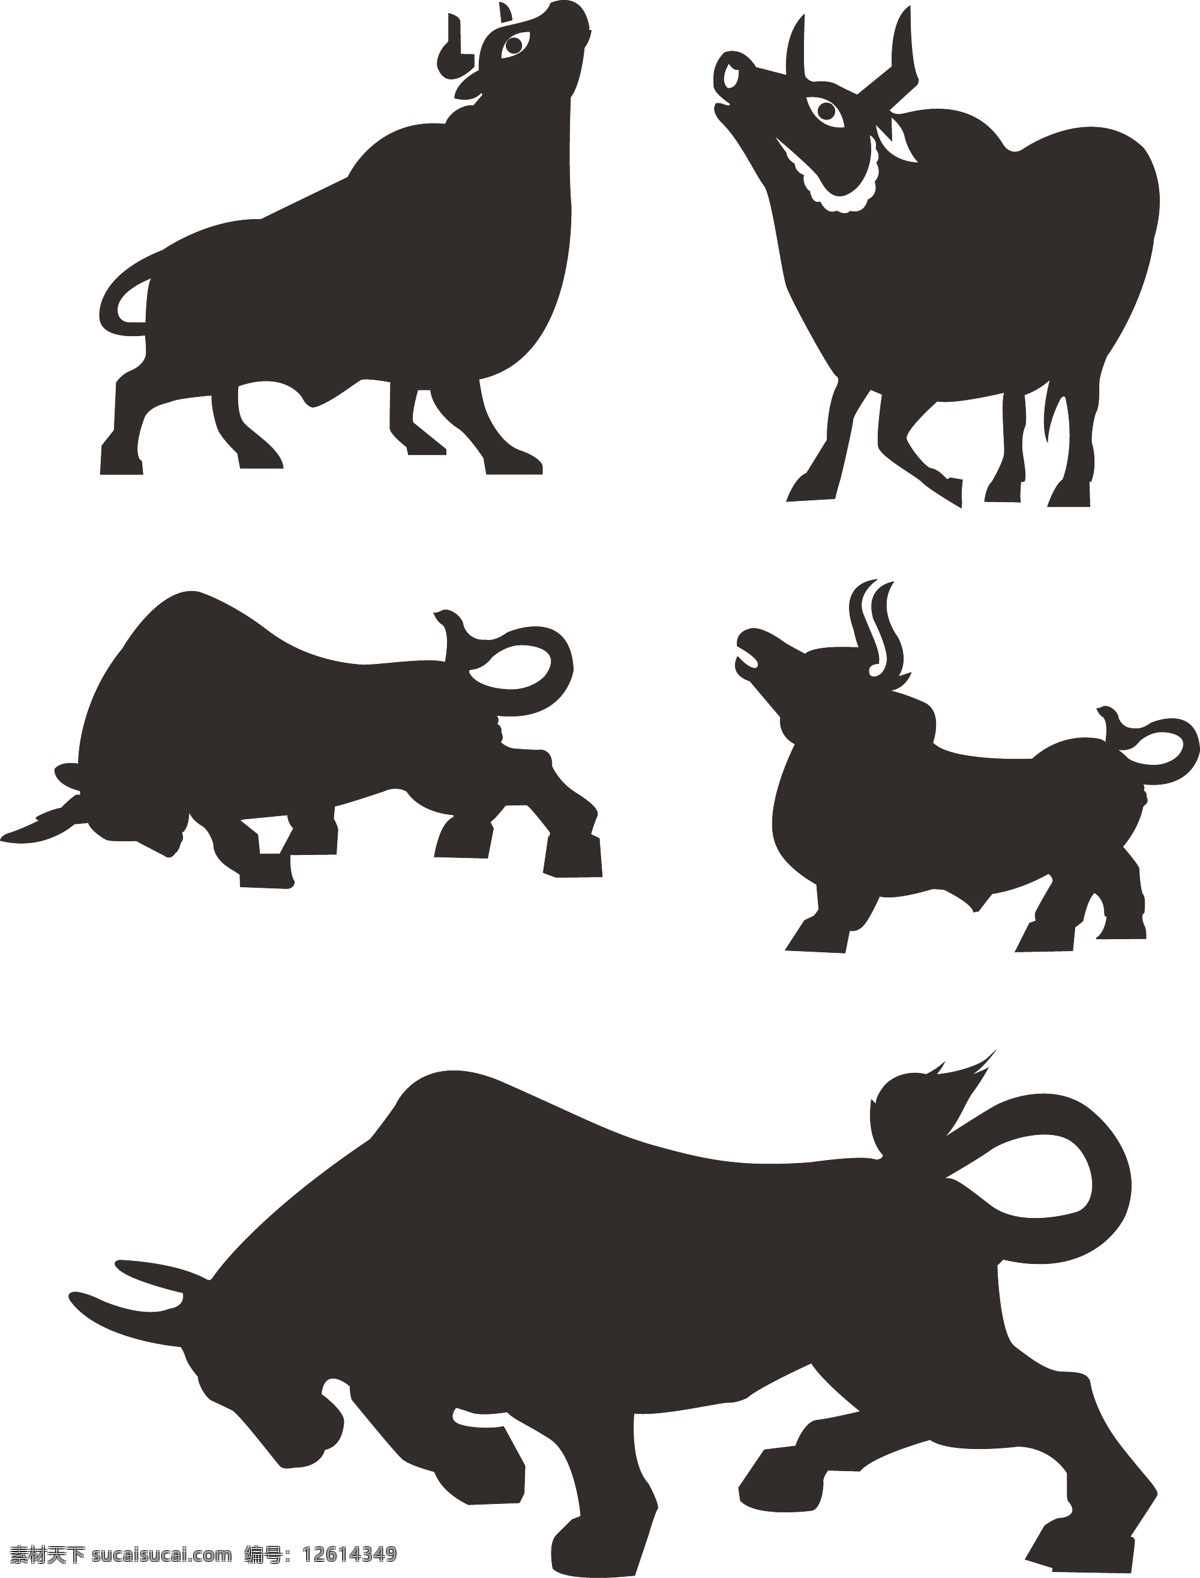 牛 剪影 动物剪影 生物世界 矢量动物 矢量牛 野生动物 矢量 模板下载 牛剪影 psd源文件